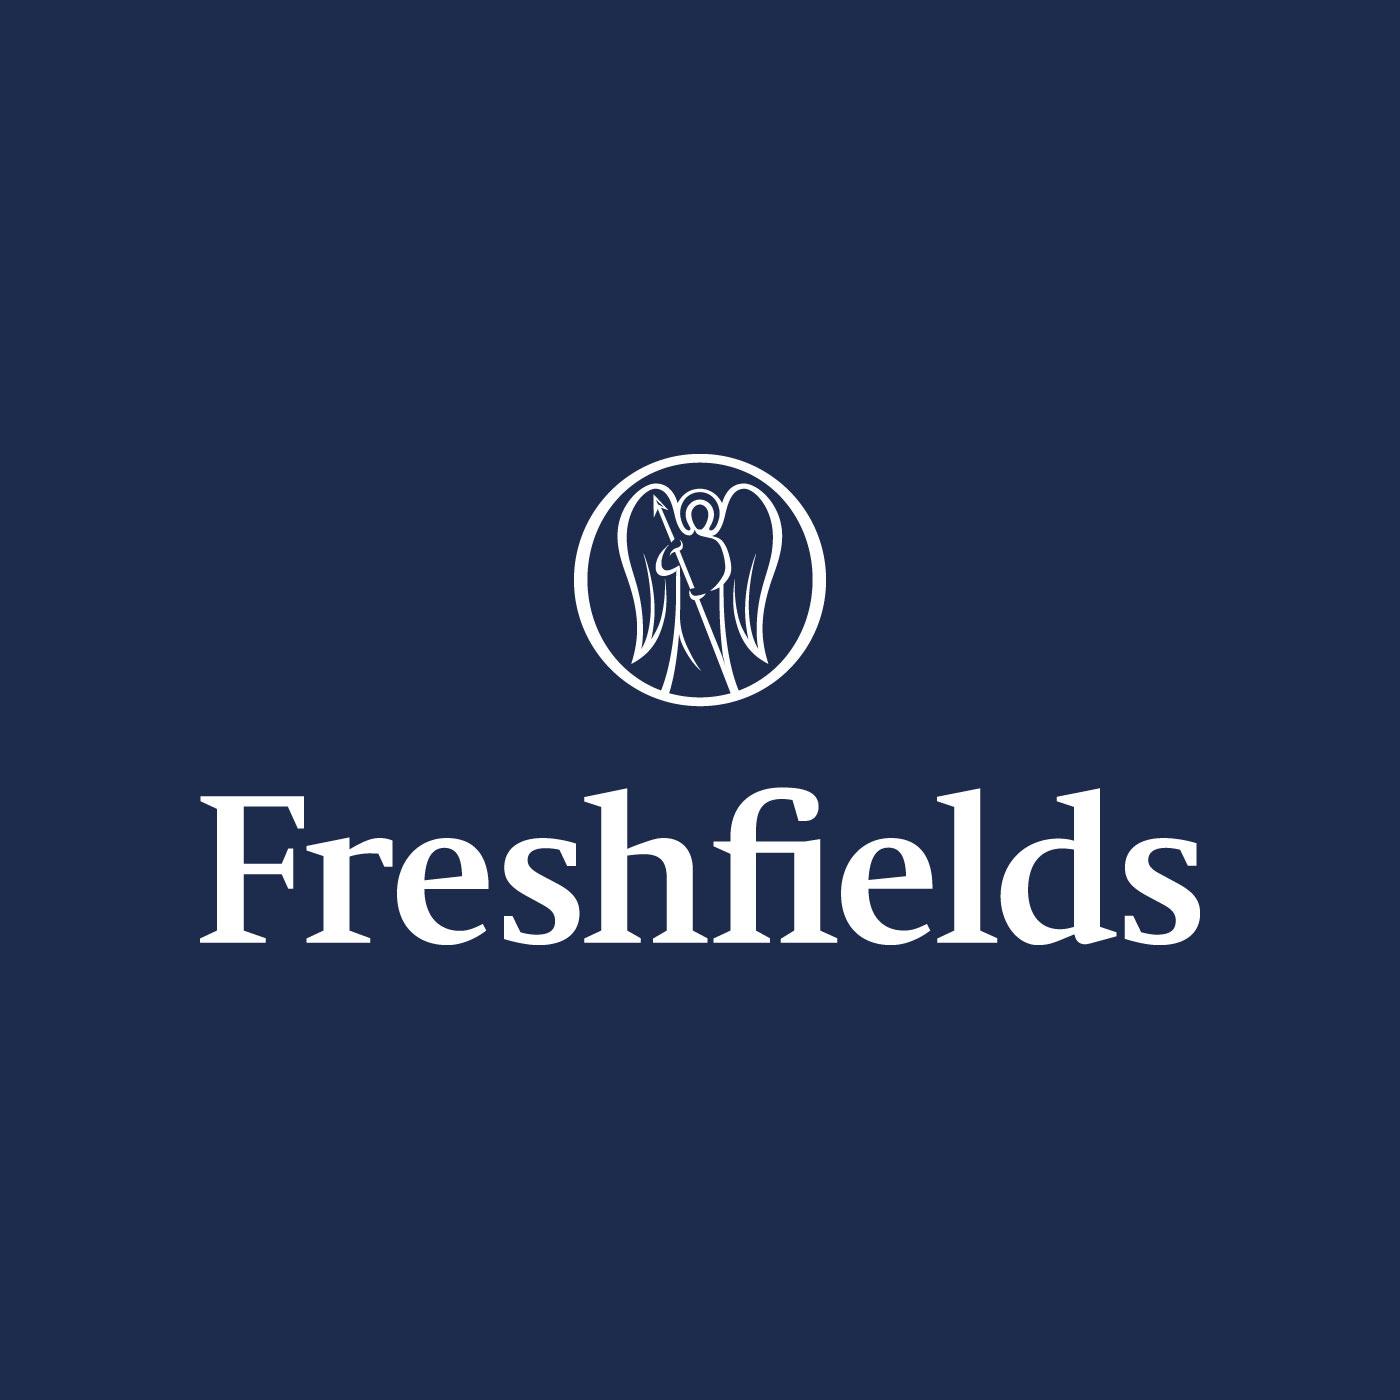 Freshfields Bruckhaus Deringer Logo - The Freshfields Podcast by Freshfields Bruckhaus Deringer on Apple ...